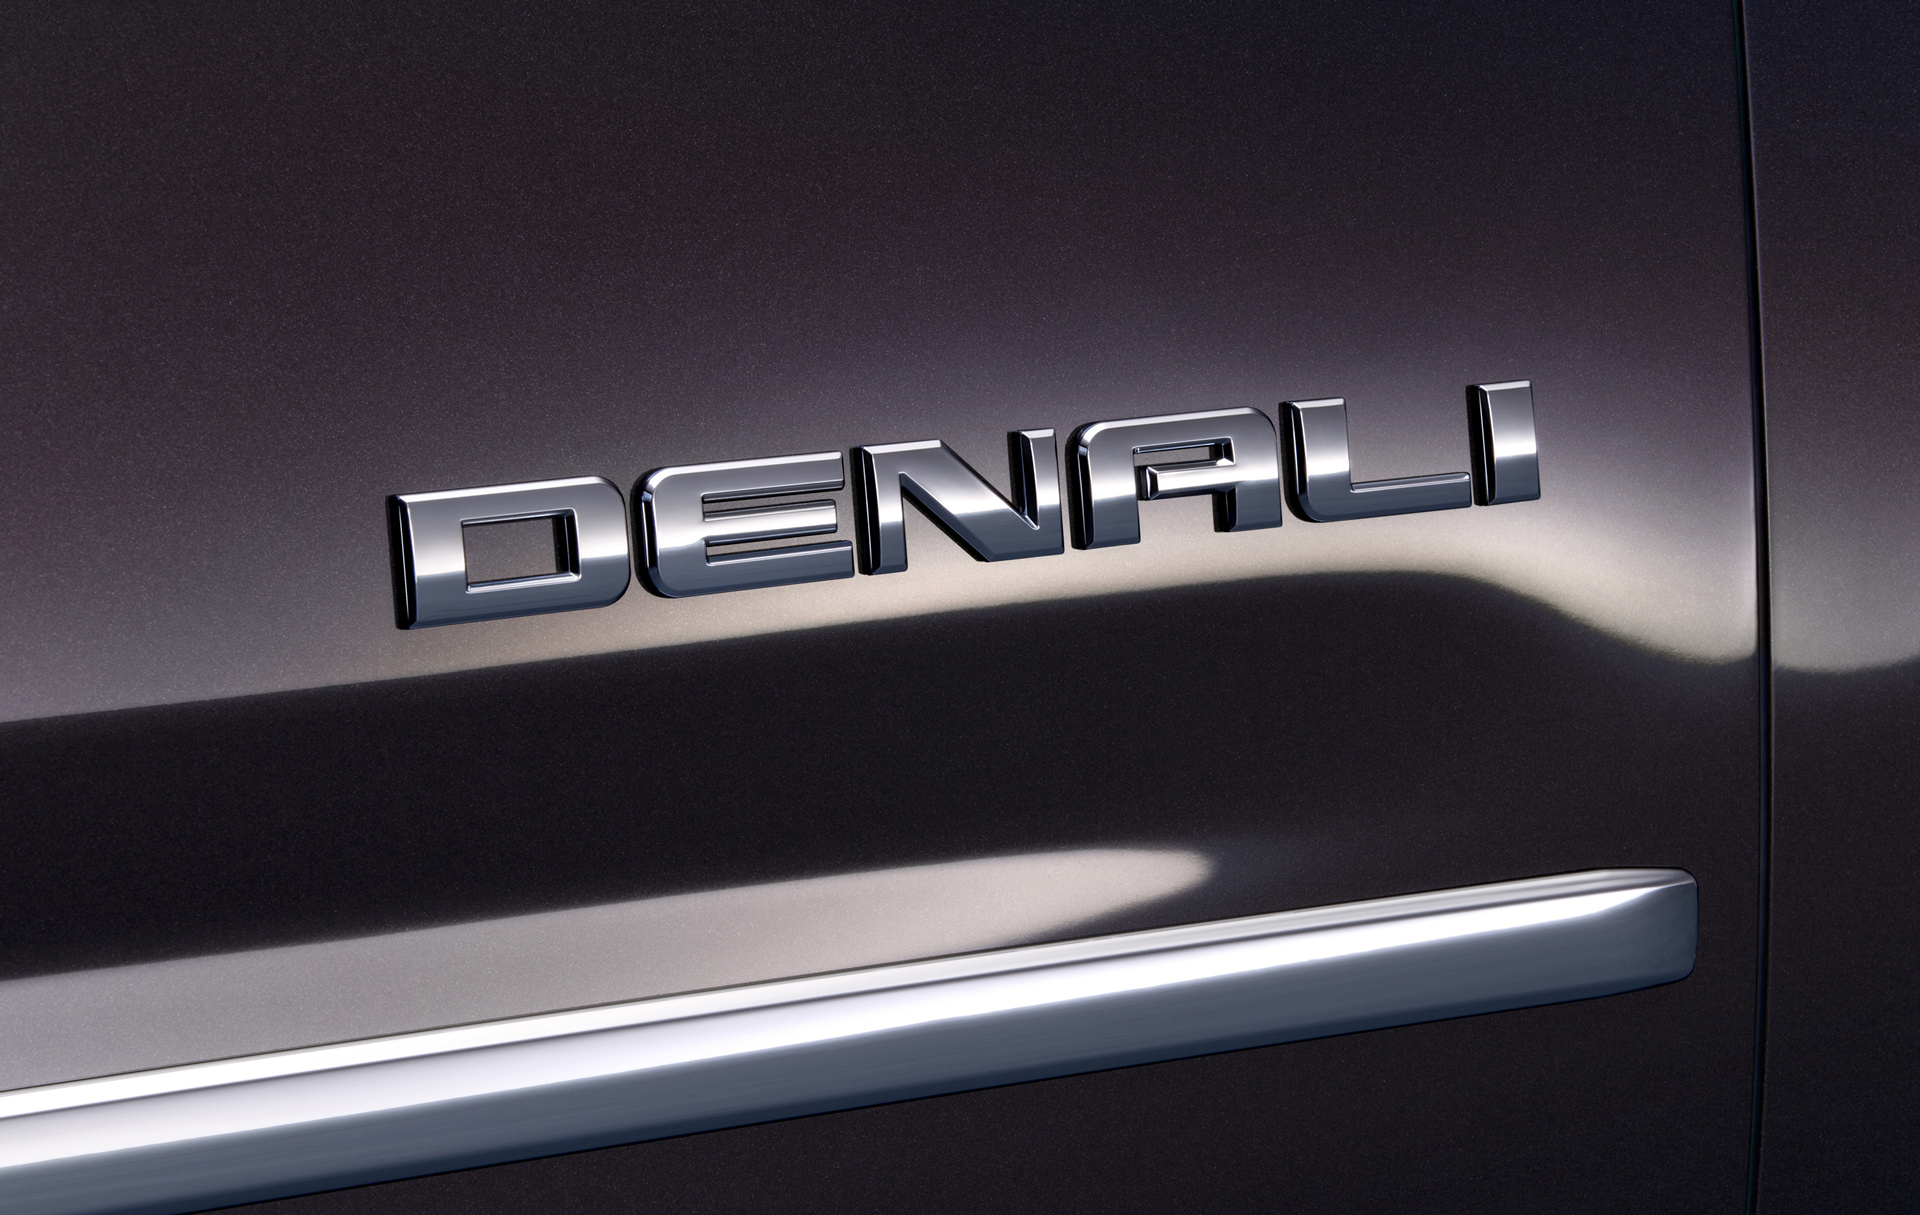 2016 GMC Yukon Denali © General Motors